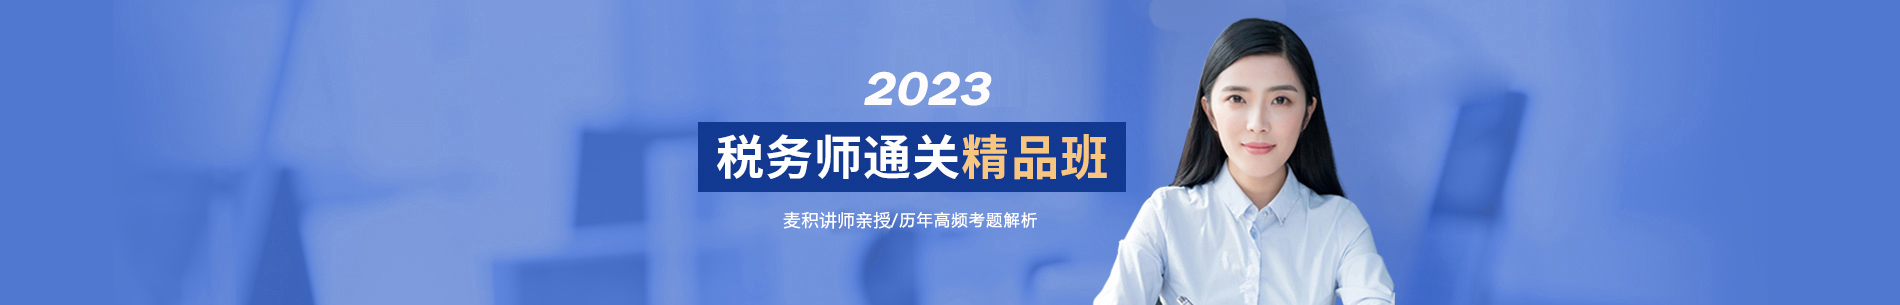 20200423税务师课程banner